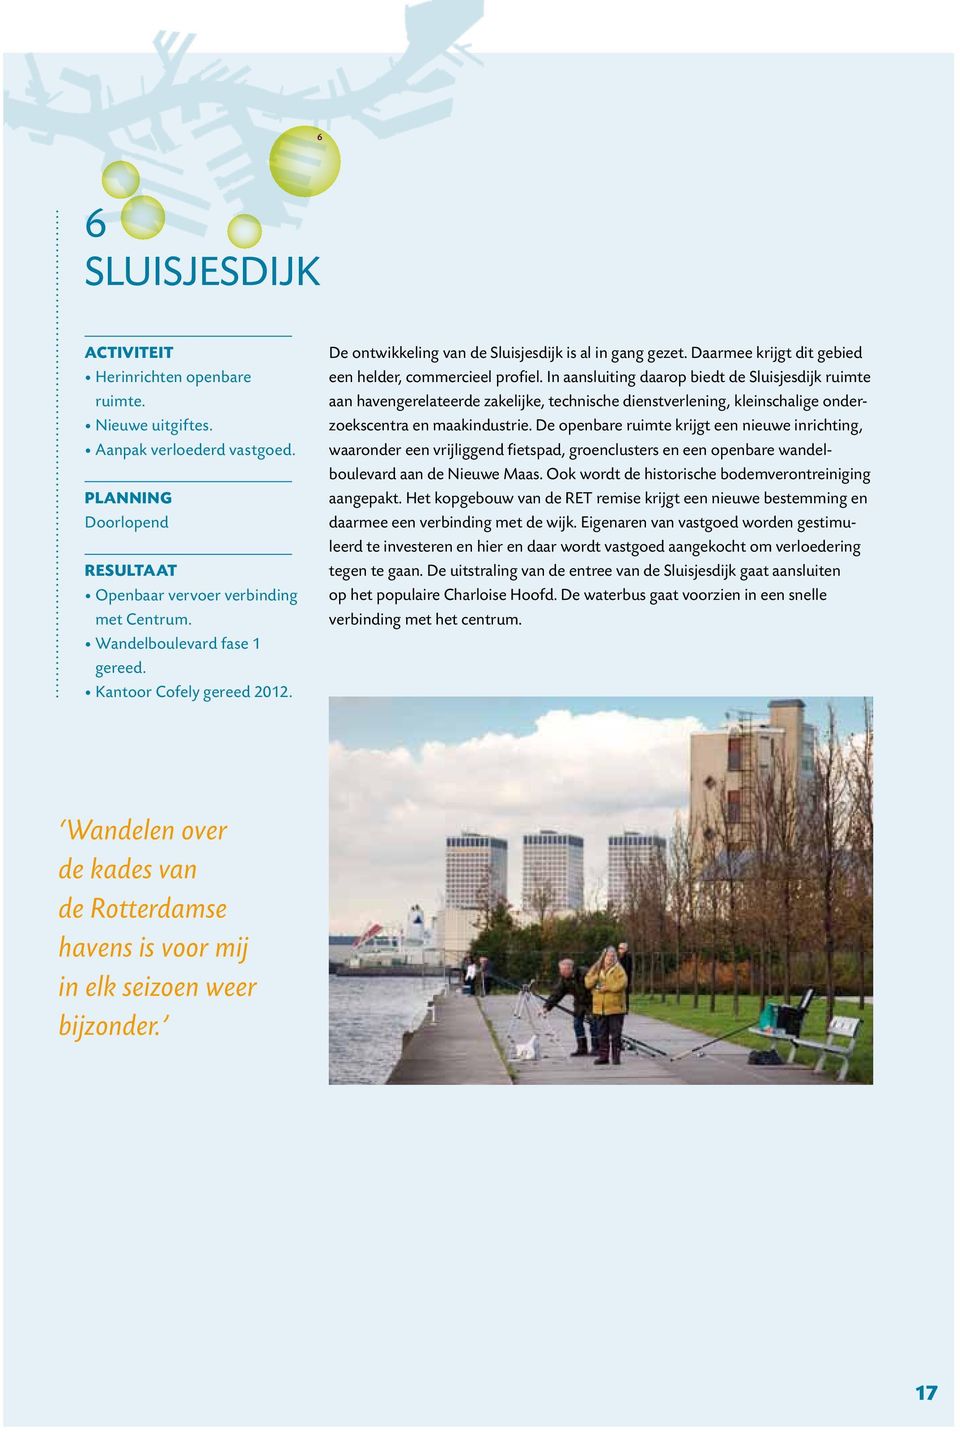 In aansluiting daarop biedt de Sluisjesdijk ruimte aan havengerelateerde zakelijke, technische dienstverlening, kleinschalige onderzoekscentra en maakindustrie.